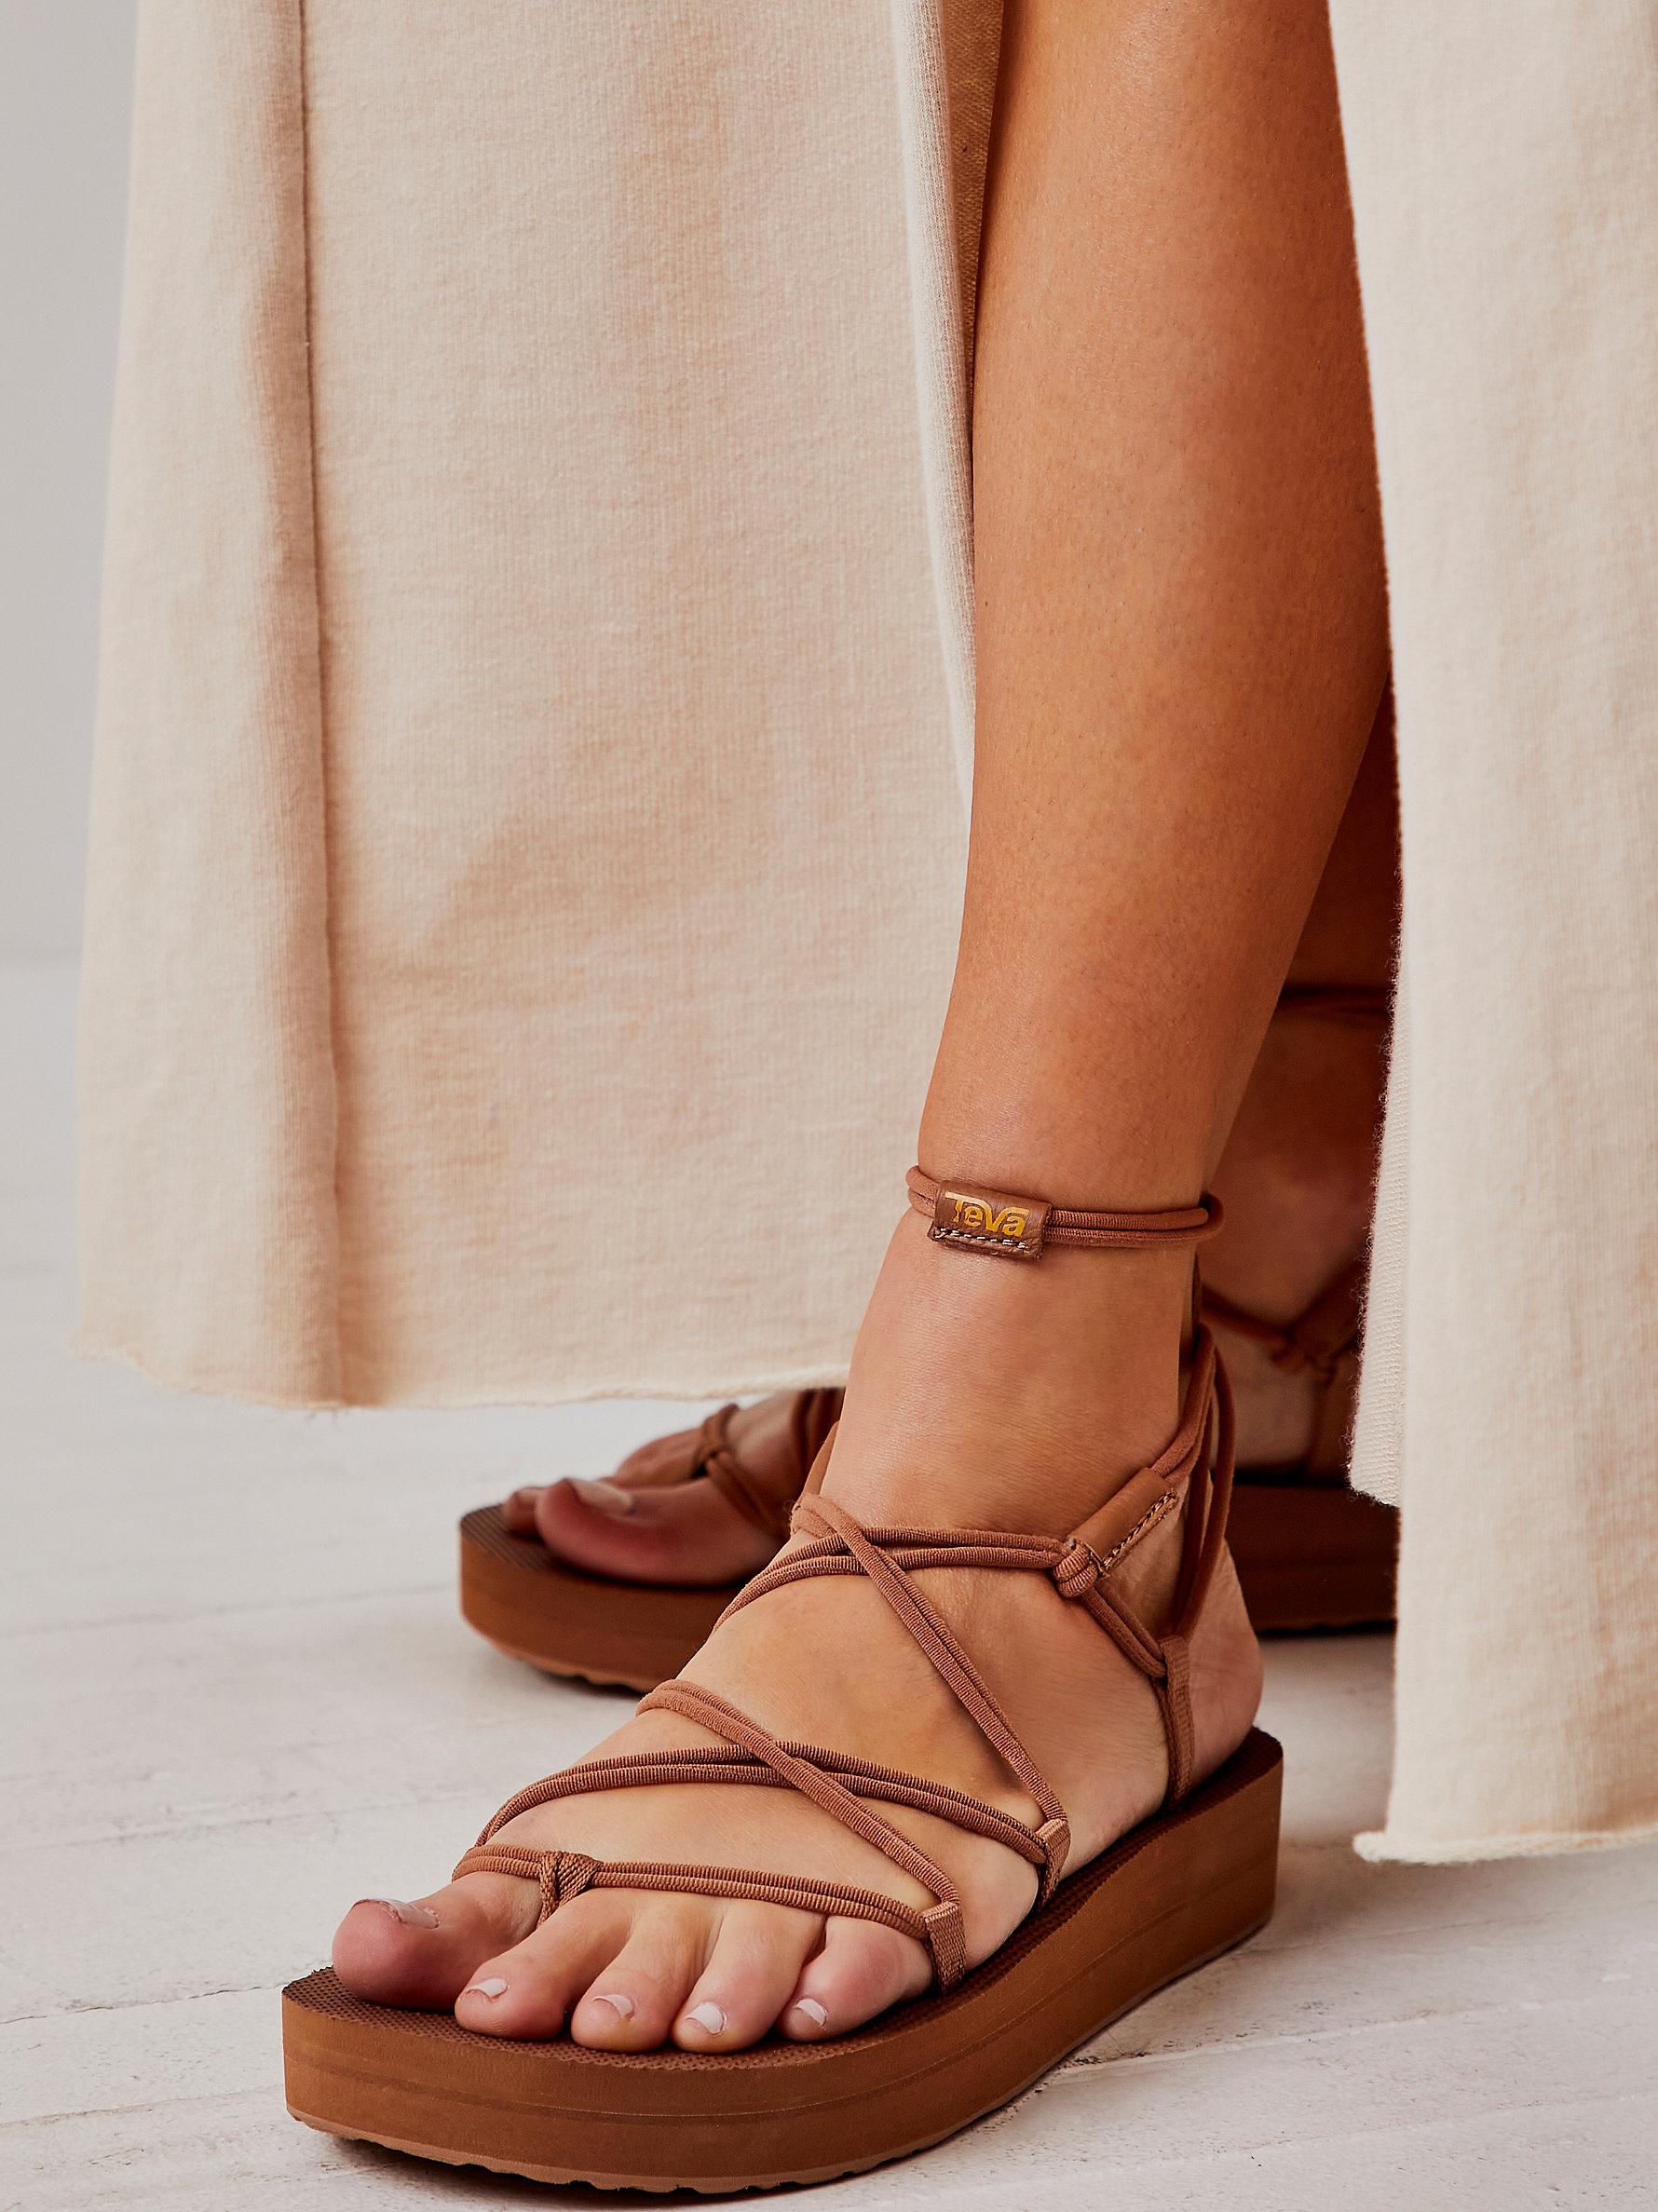 Free People Teva Midform Infinity Sandals in Brown | Lyst